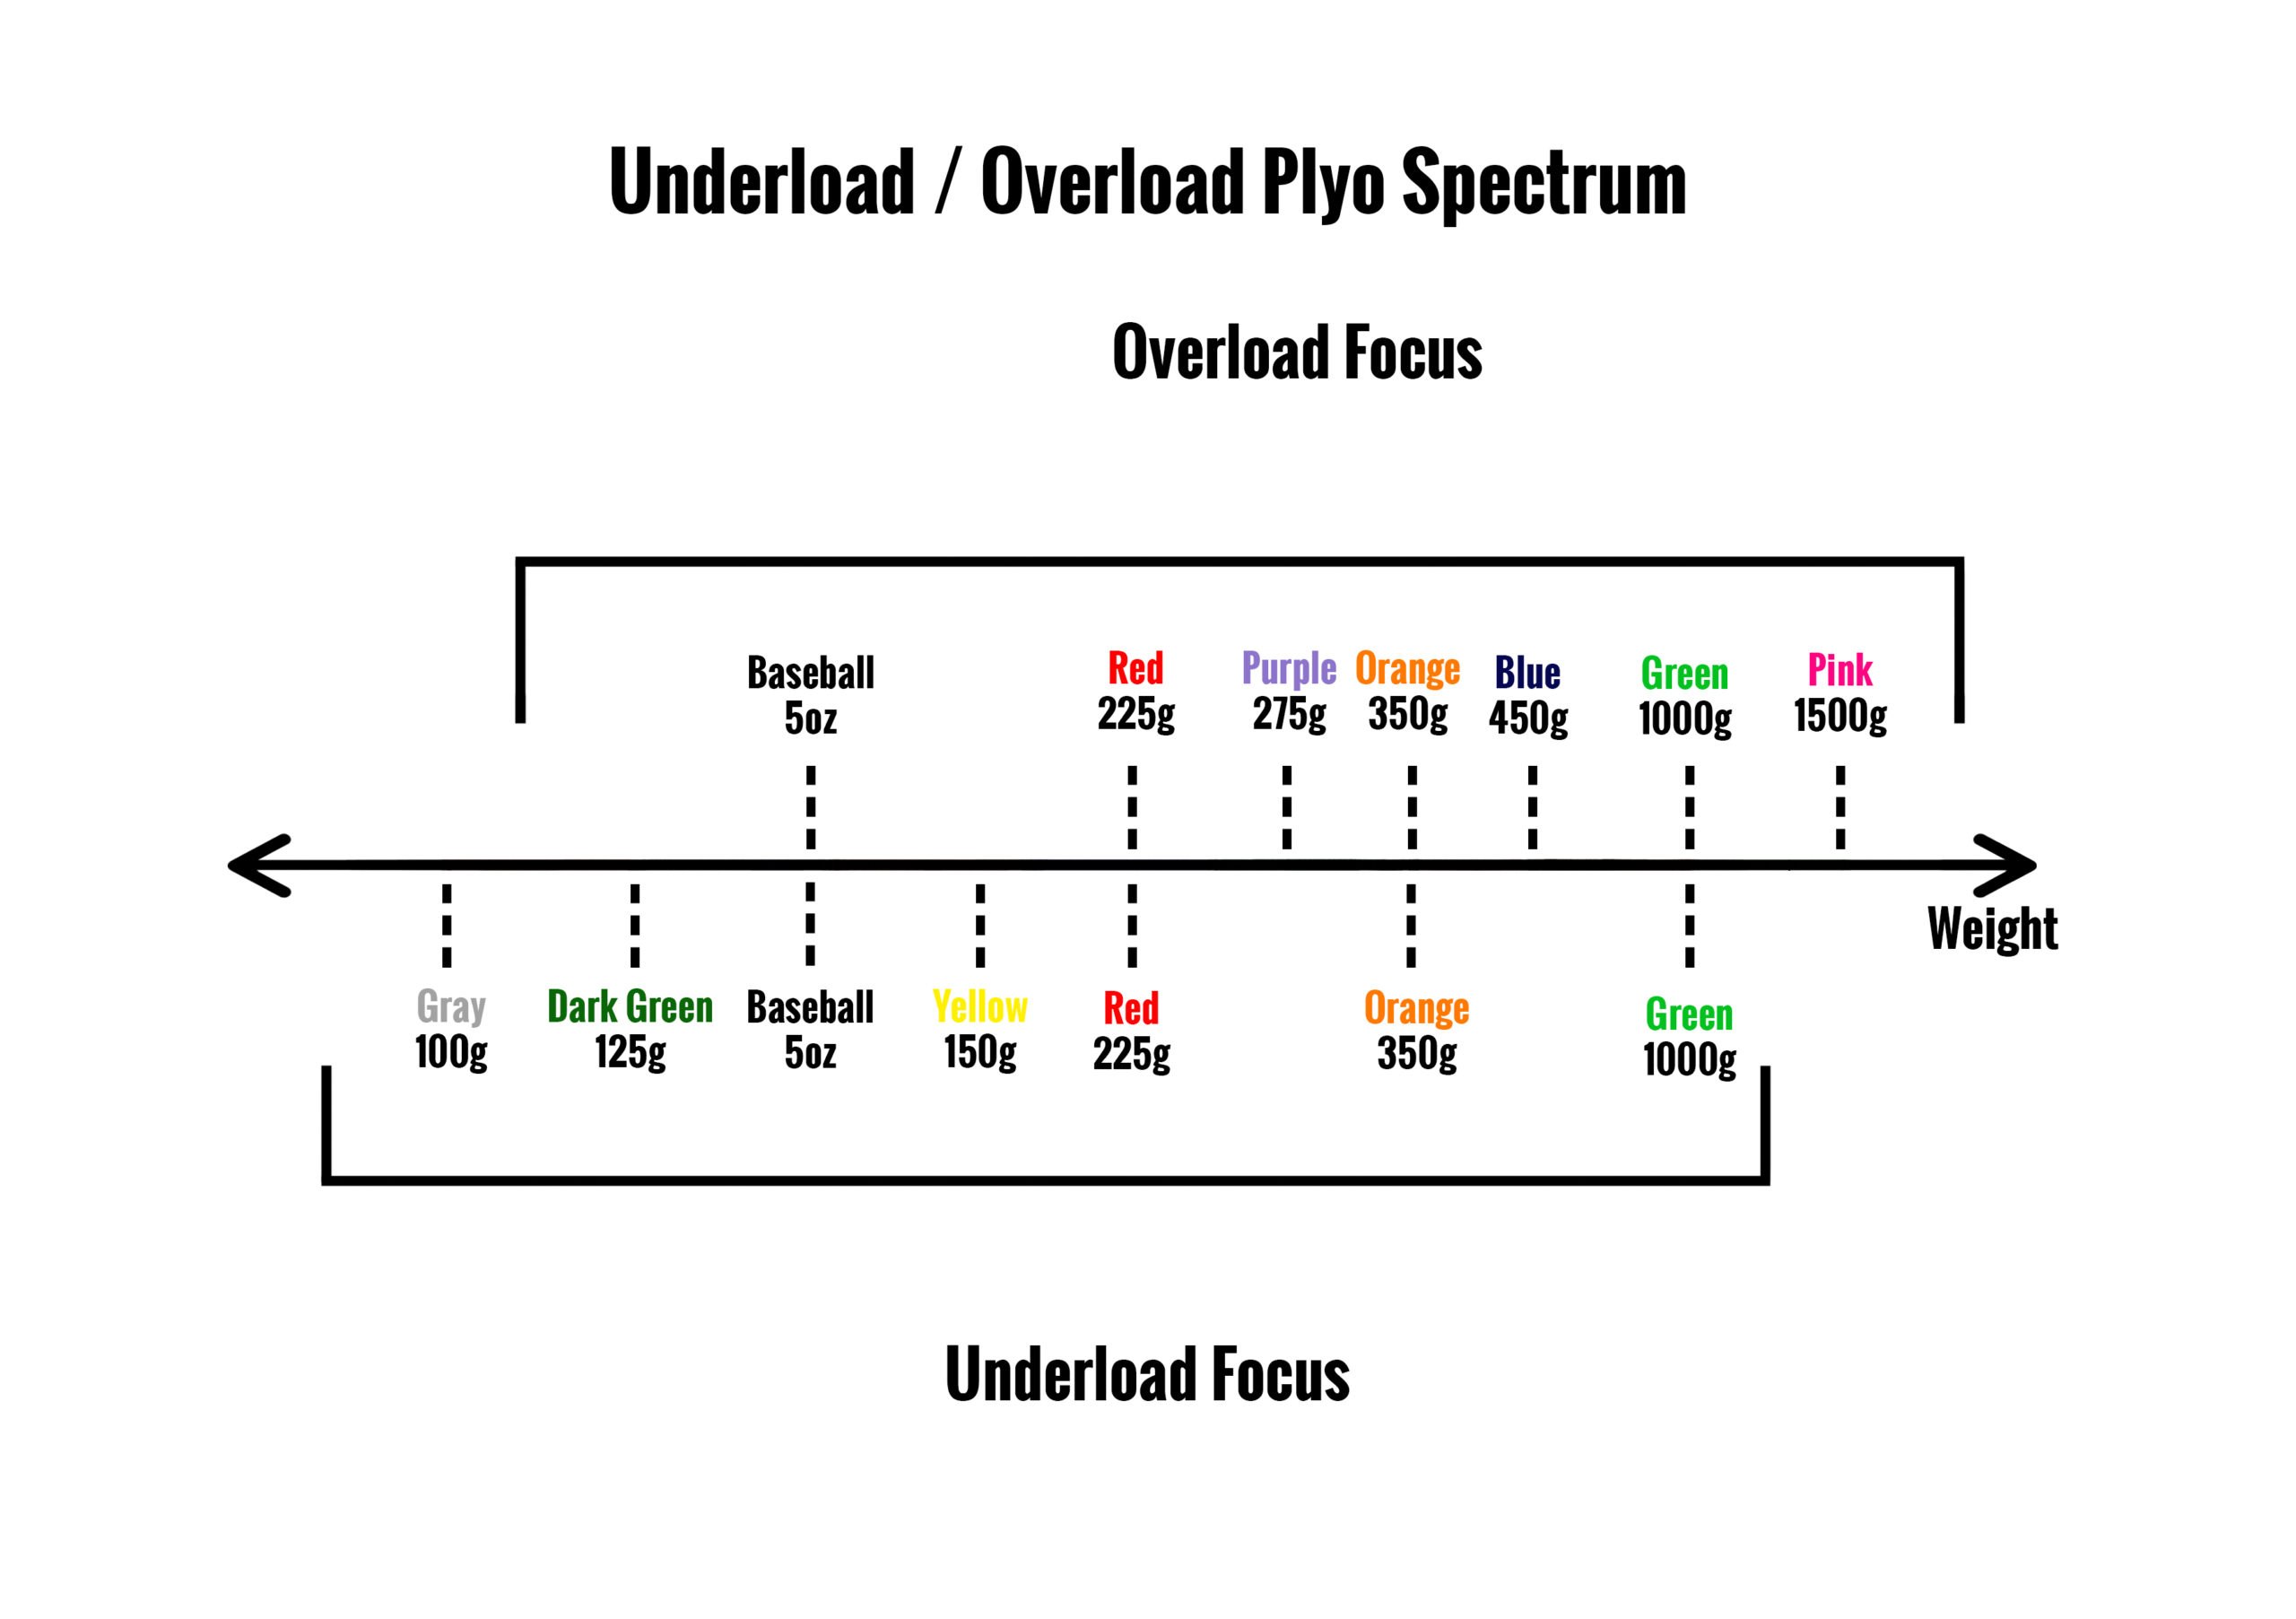 Underload/Overload Spectrum